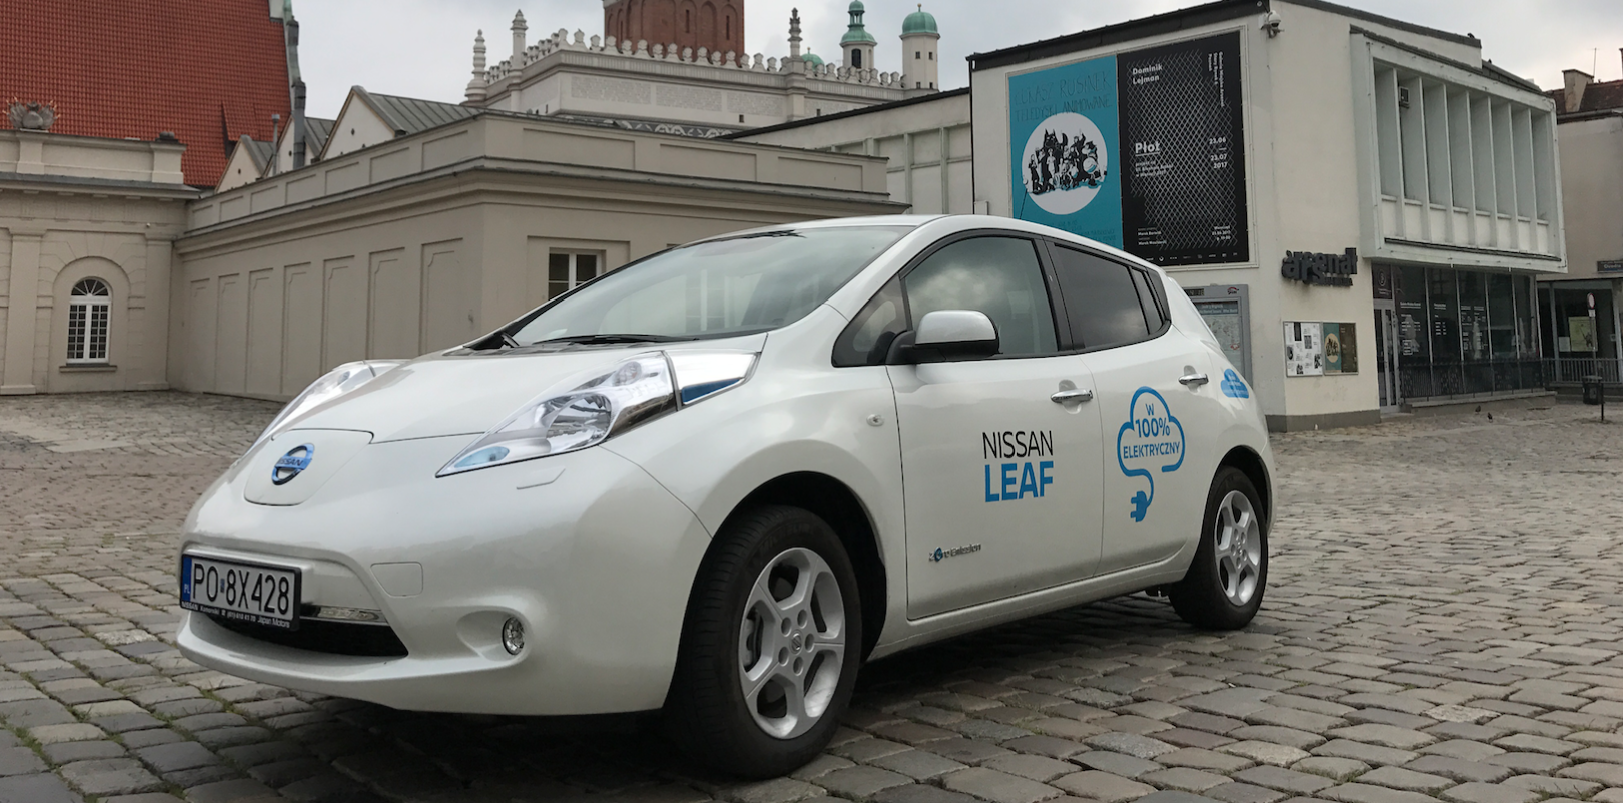 Jaka przyszłość czeka elektryczne samochody w Poznaniu?